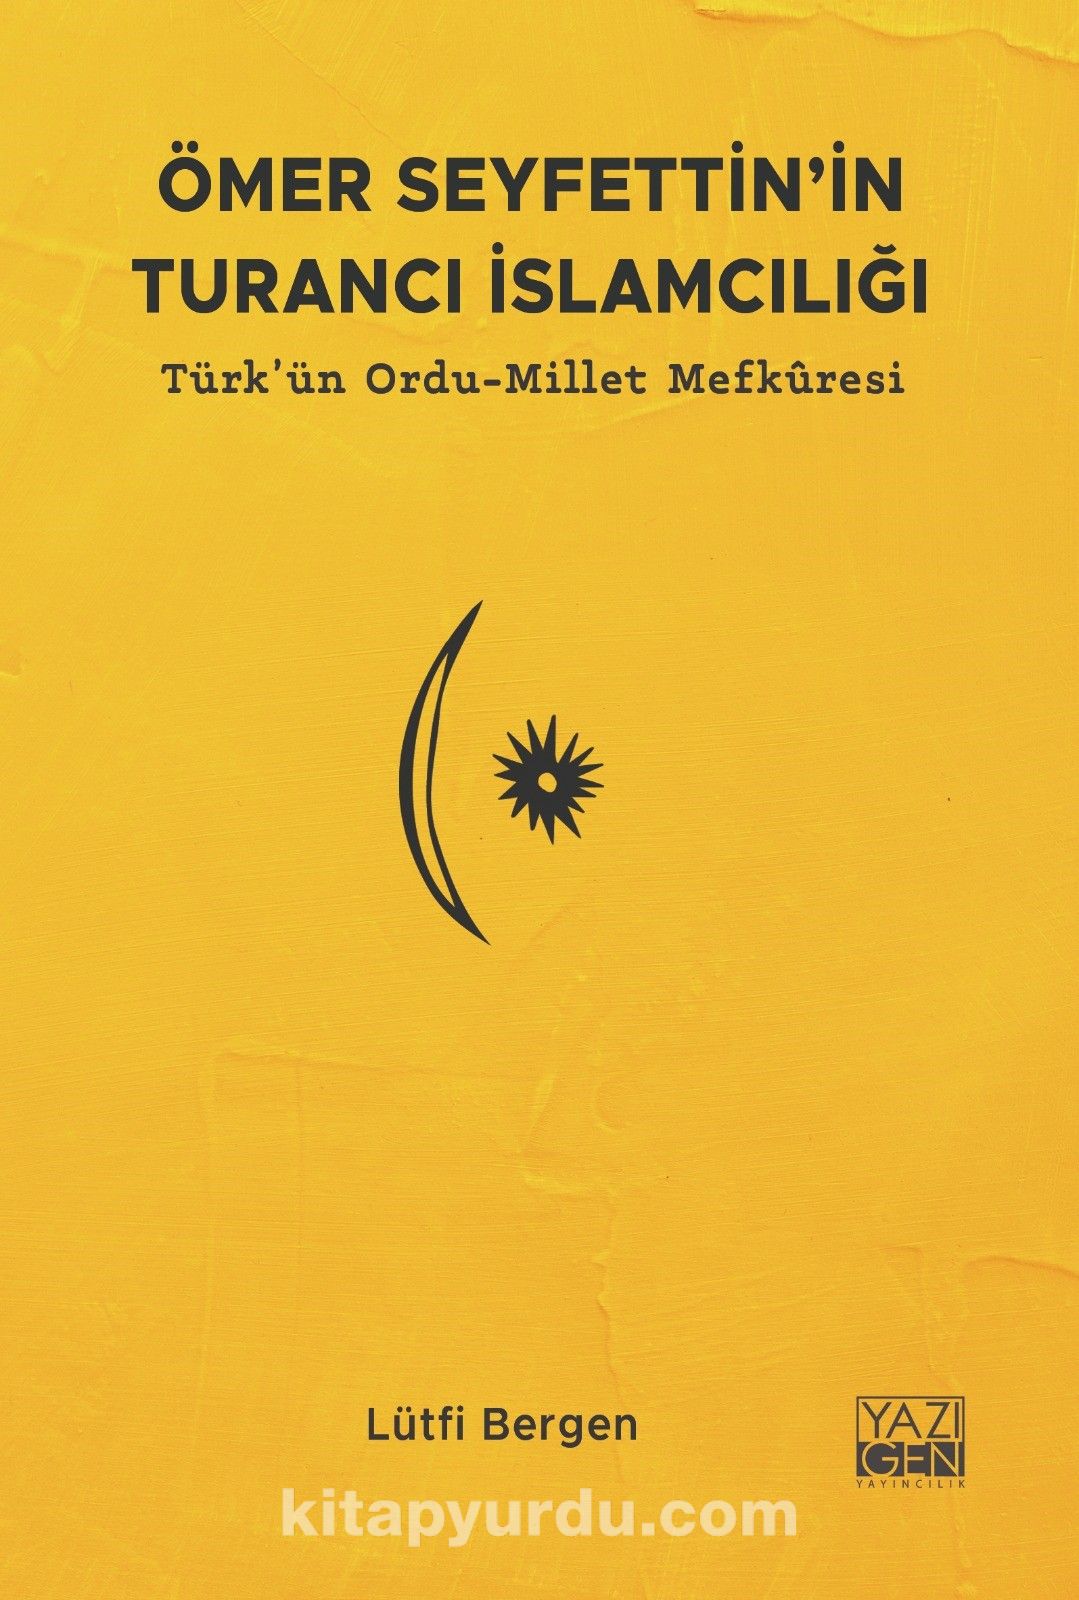 Ömer Seyfettin’in Turancı İslamcılığı & Türk'ün Ordu-Millet Mefkuresi